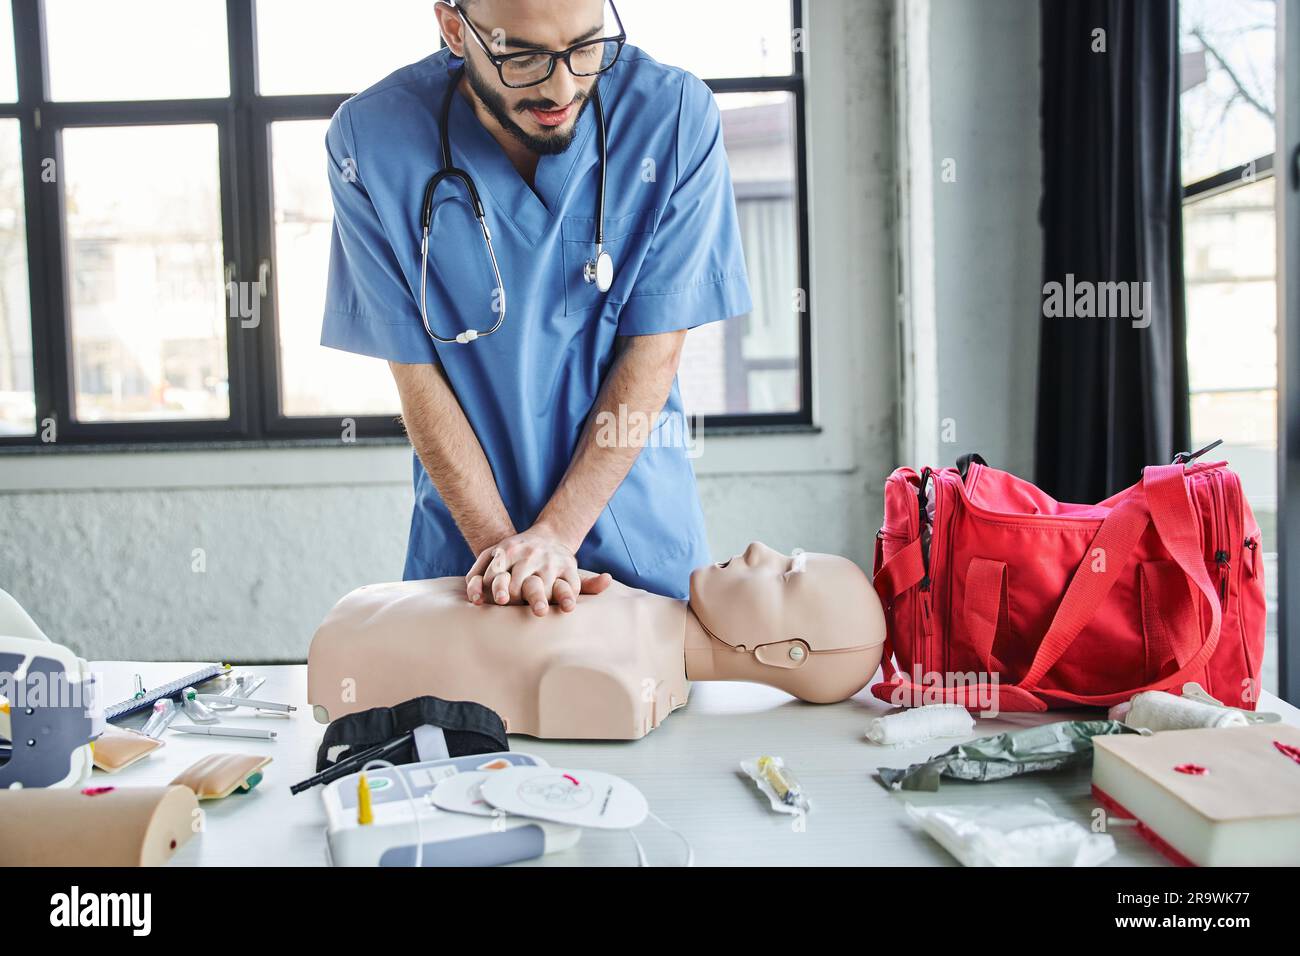 Jeunes professionnels paramédicaux pratiquant des compressions thoraciques sur un mannequin de RCP près d'un sac de premiers soins rouge, d'un défibrillateur automatisé et d'appareils médicaux en train Banque D'Images